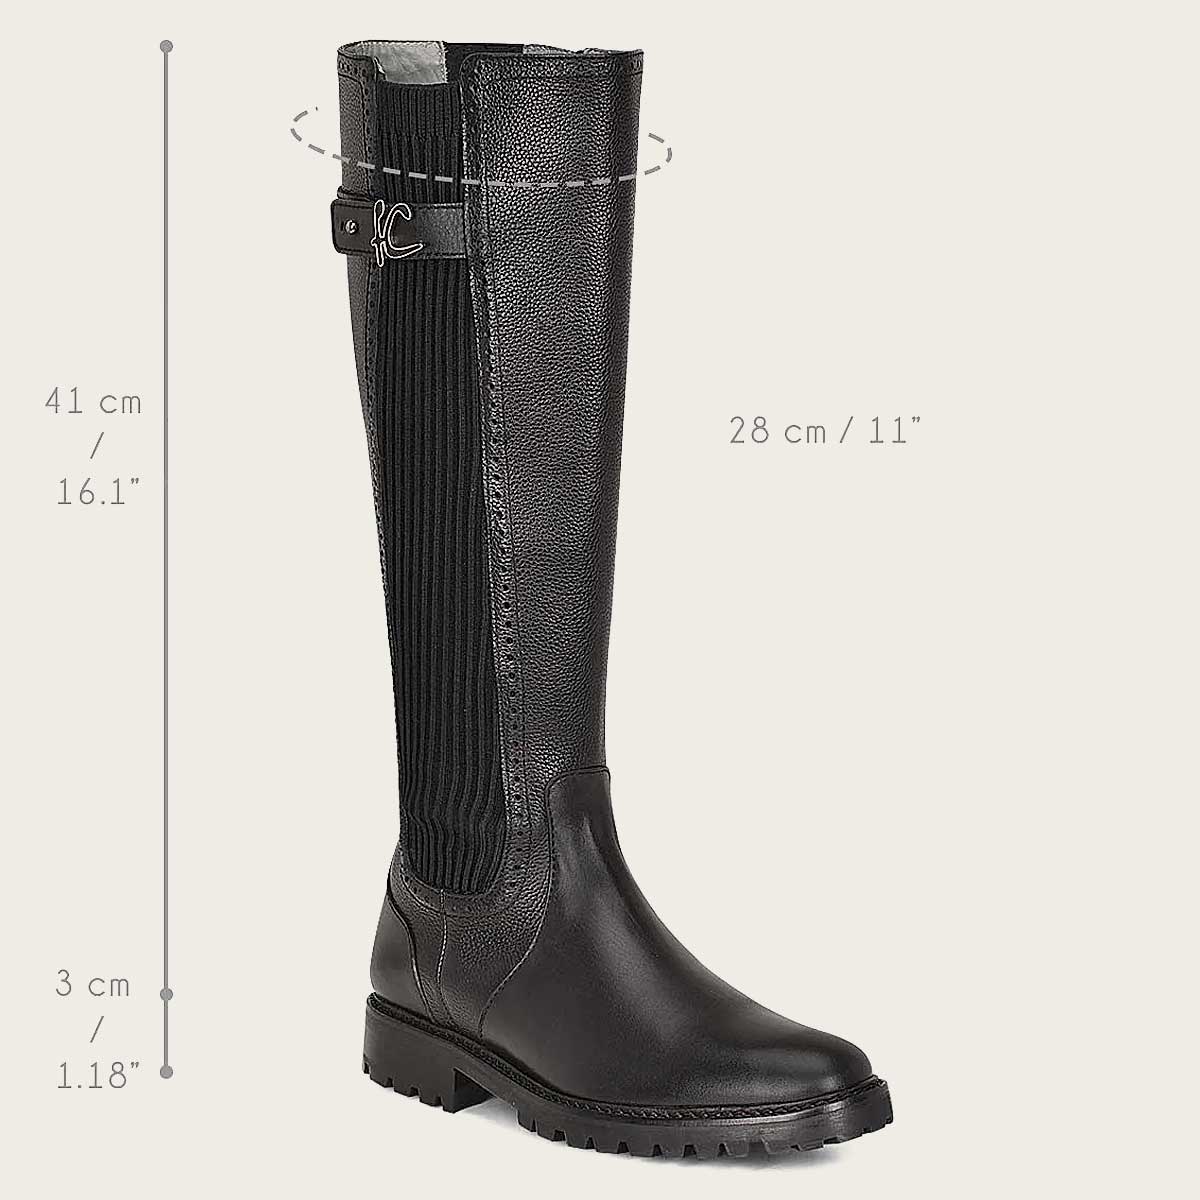 Boots measurements